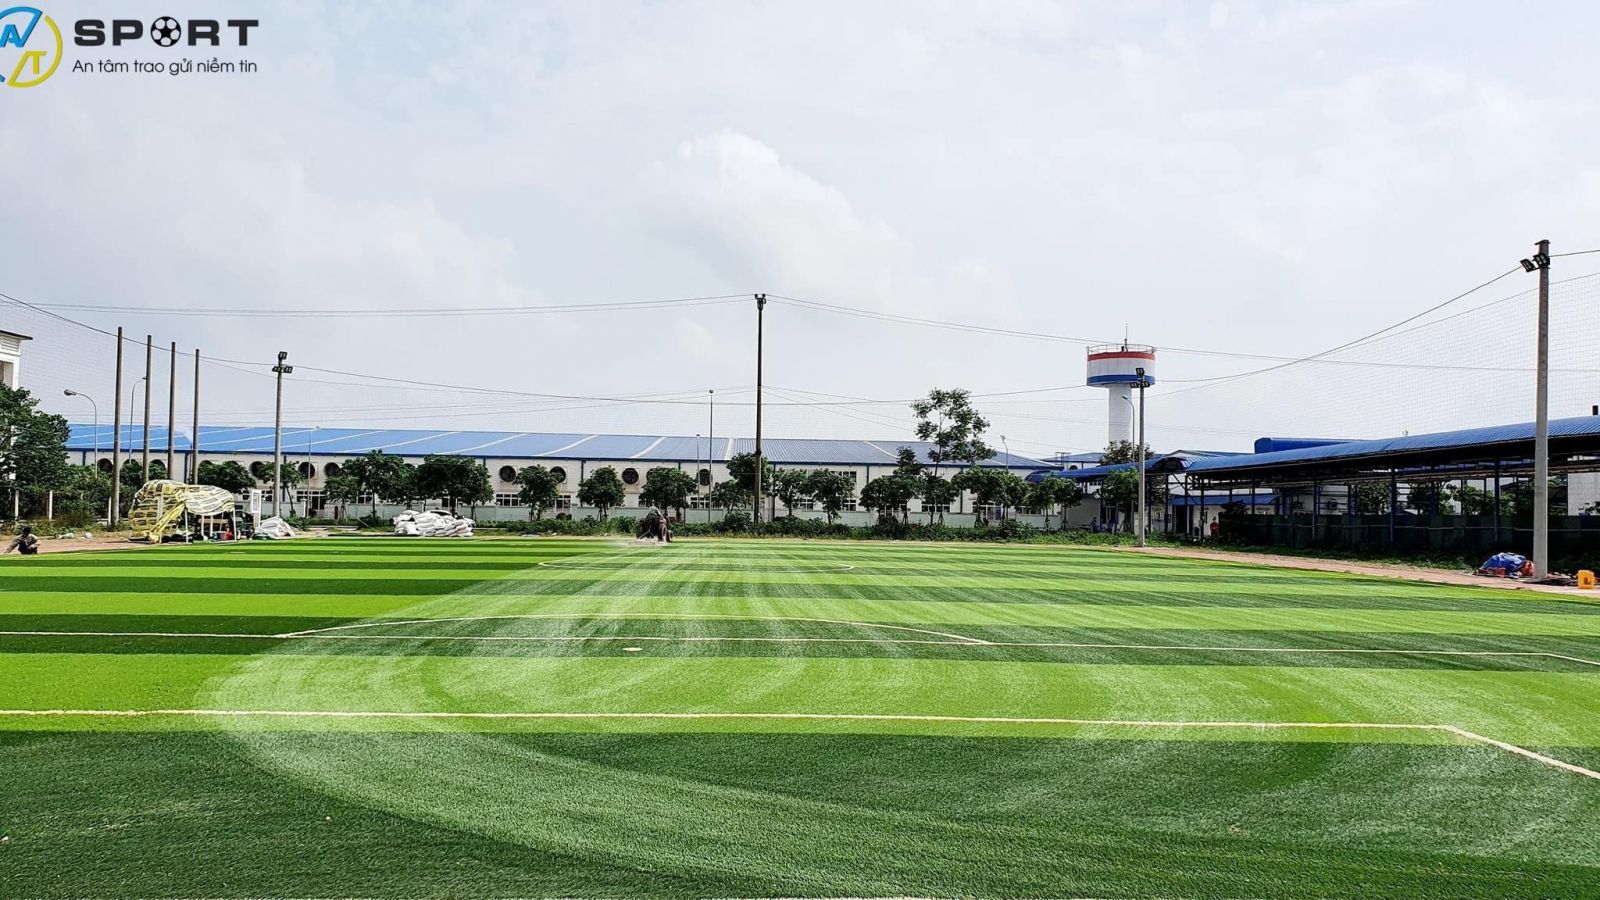 Thi công sân bóng cỏ nhân tạo ở Thanh Chương, Nghệ An